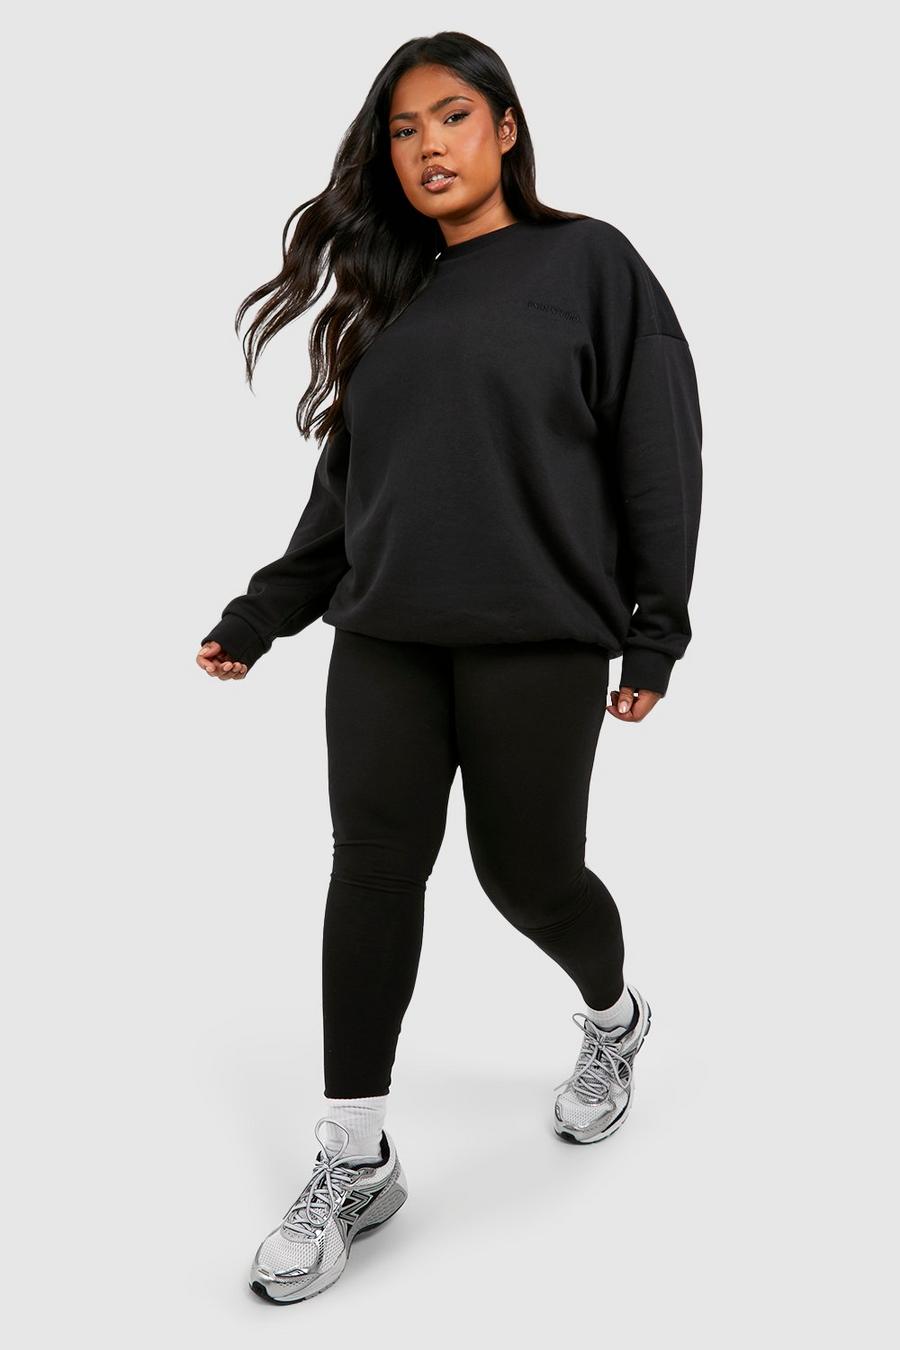 Black Plus Oversized Sweatshirt And Legging Set